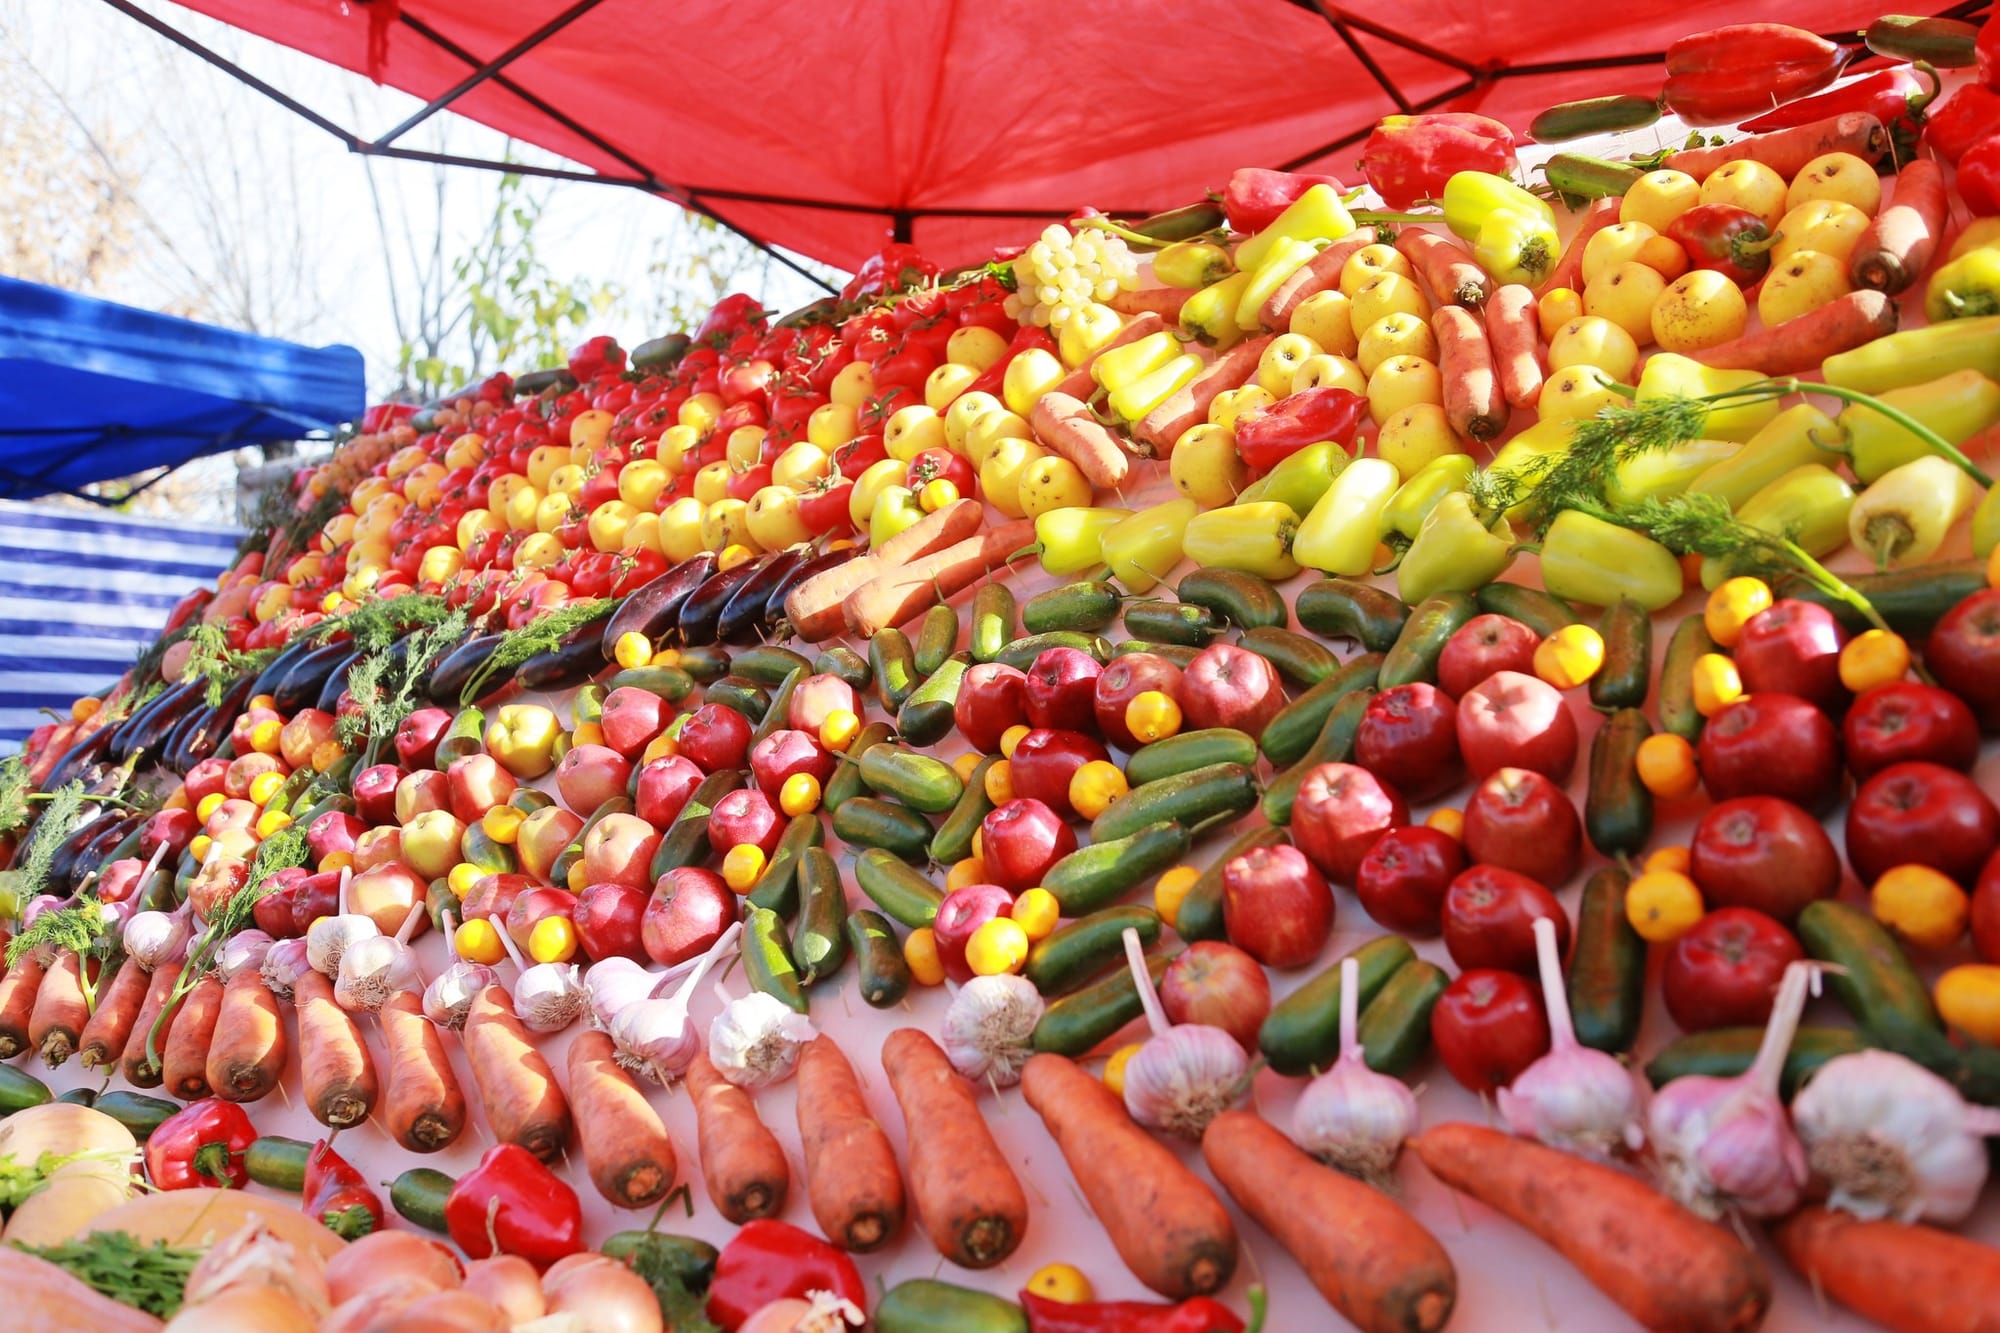 Кыргызстан вошел в топ-5 потребителей плодоовощной продукции из Узбекистана